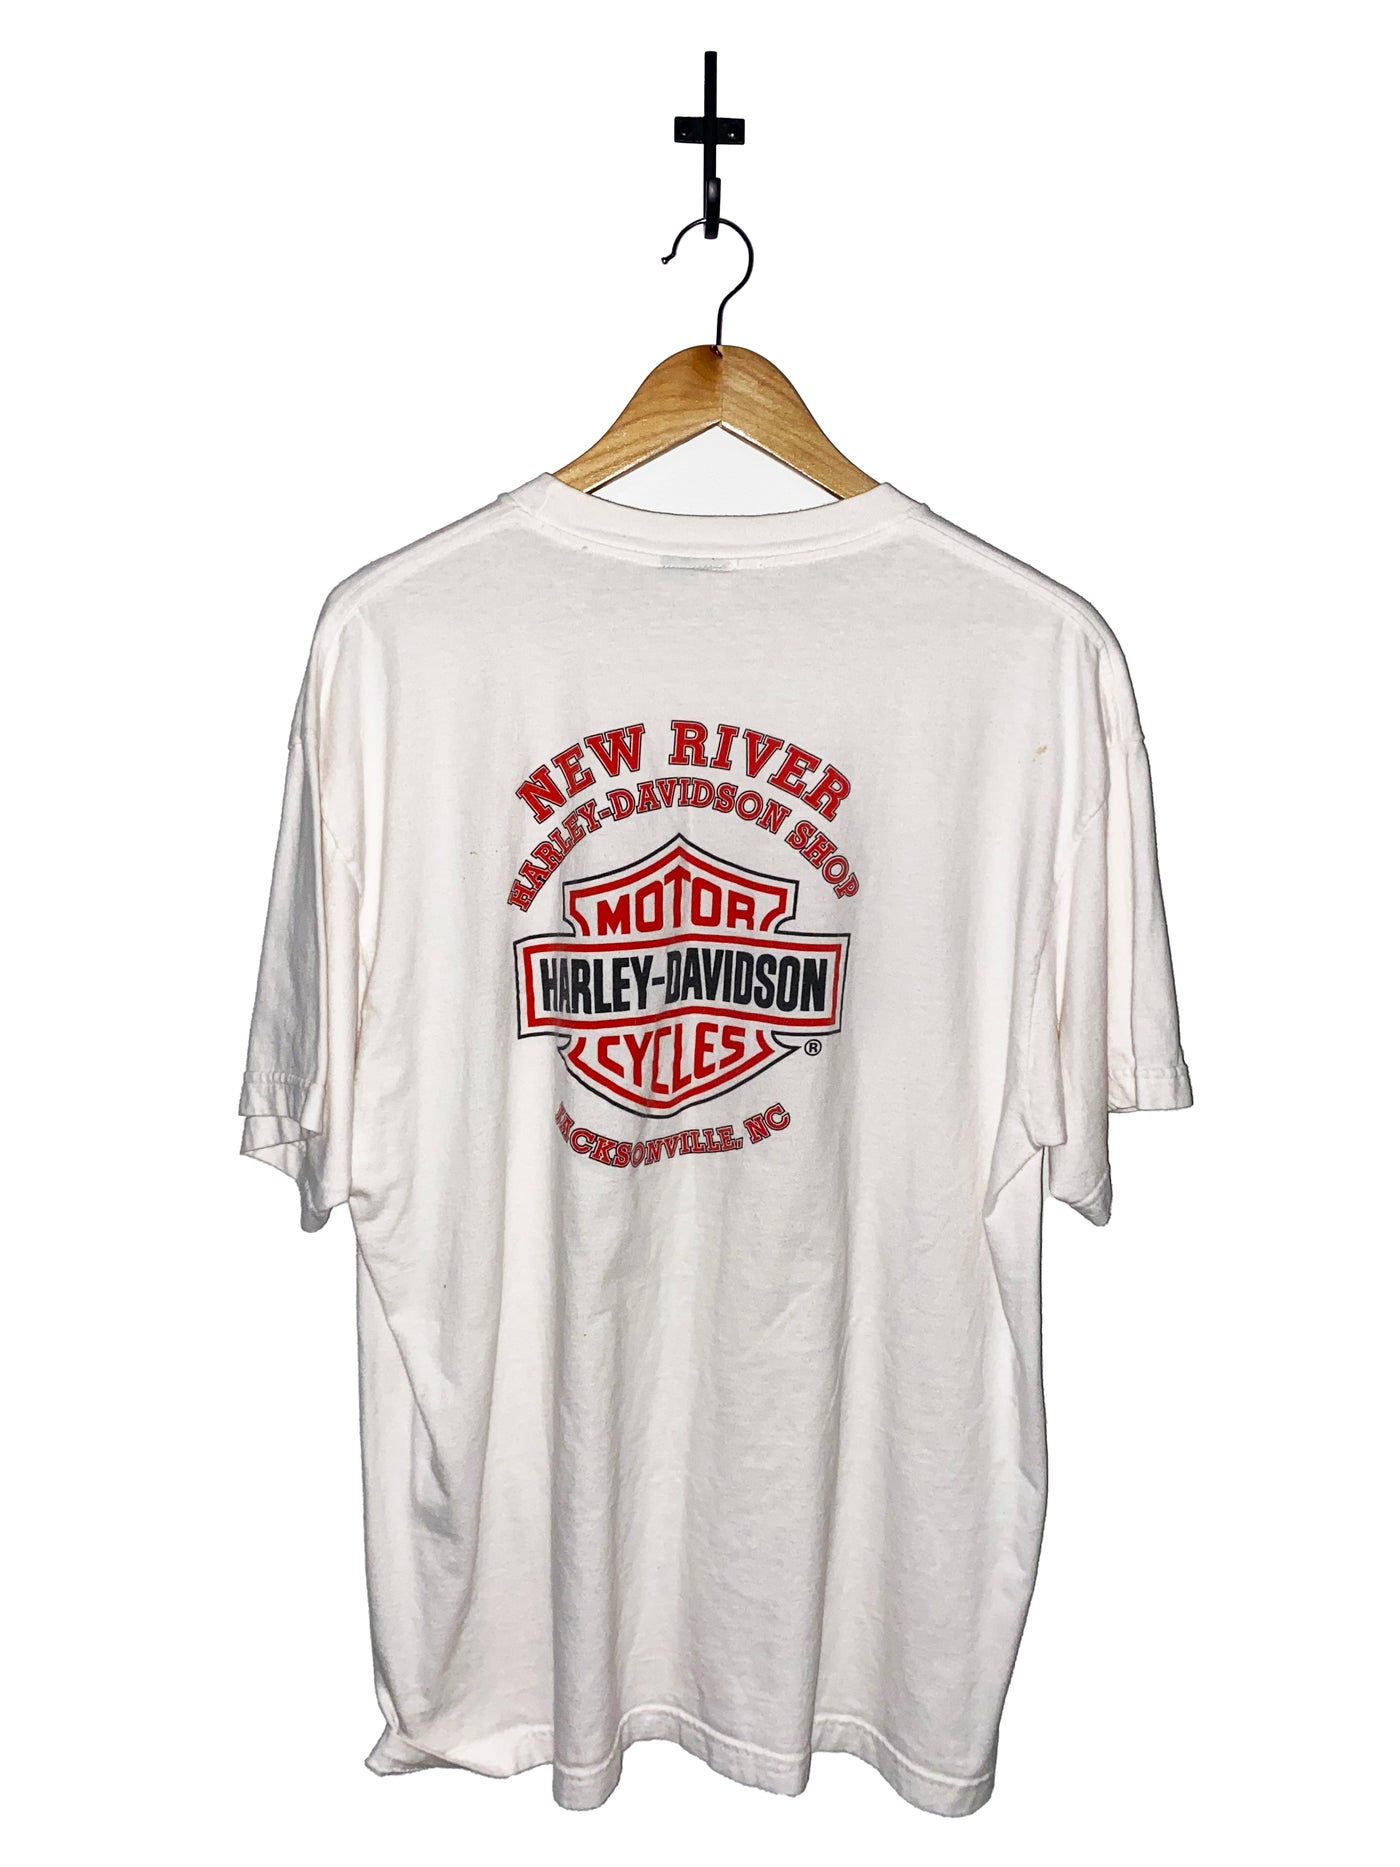 Vintage Harley Davidson Jacksonville,NC T-Shirt